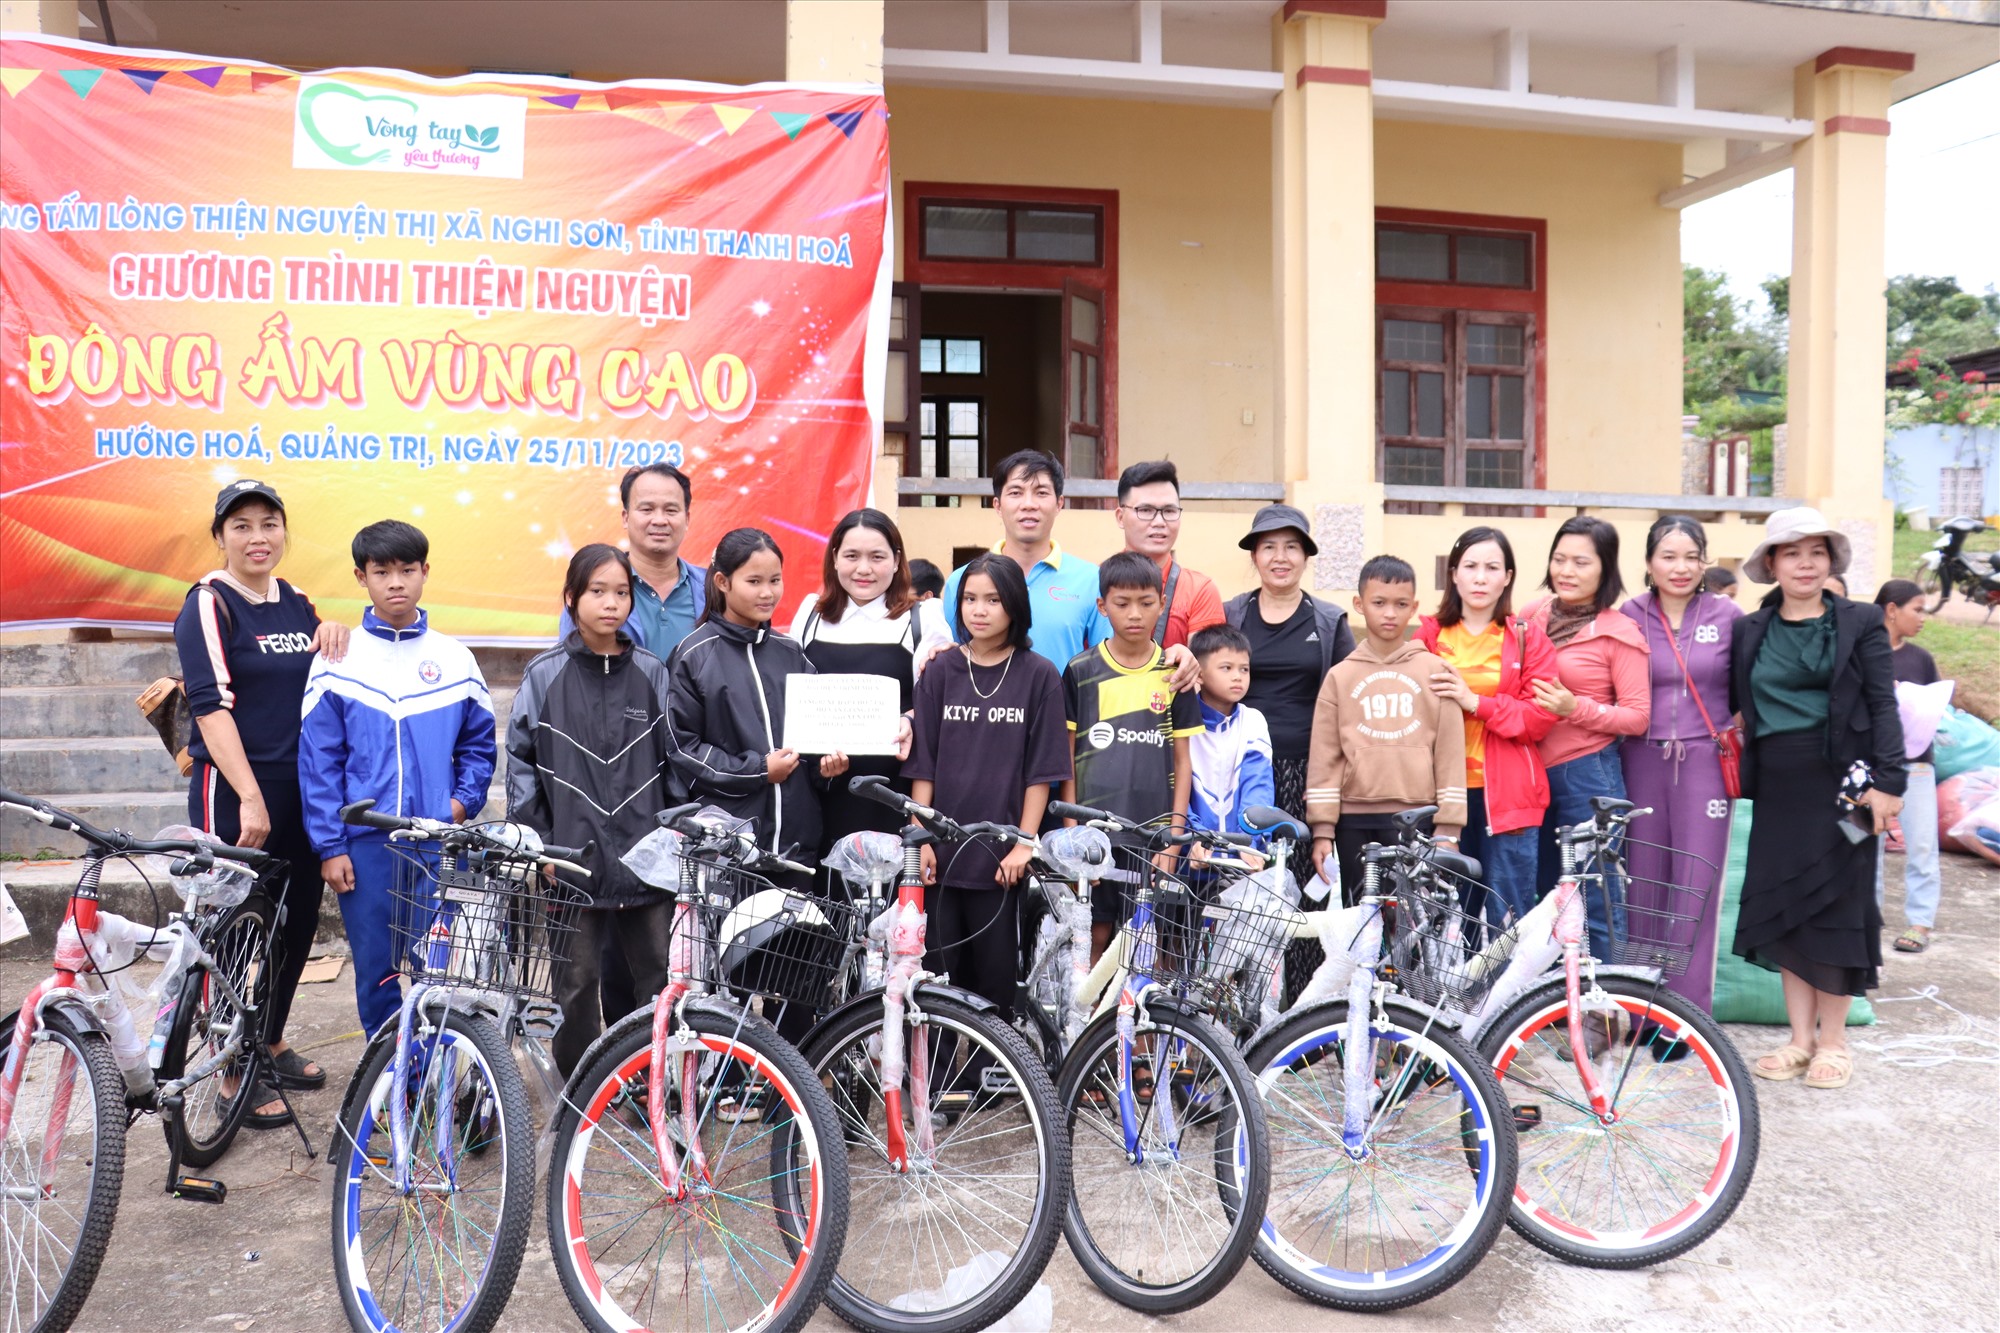 Nhóm Những tấm lòng thiện nguyện thị xã Nghi Sơn trao tặng xe đạp cho các em học sinh khó khăn tại Hướng Hóa - Ảnh: T.P